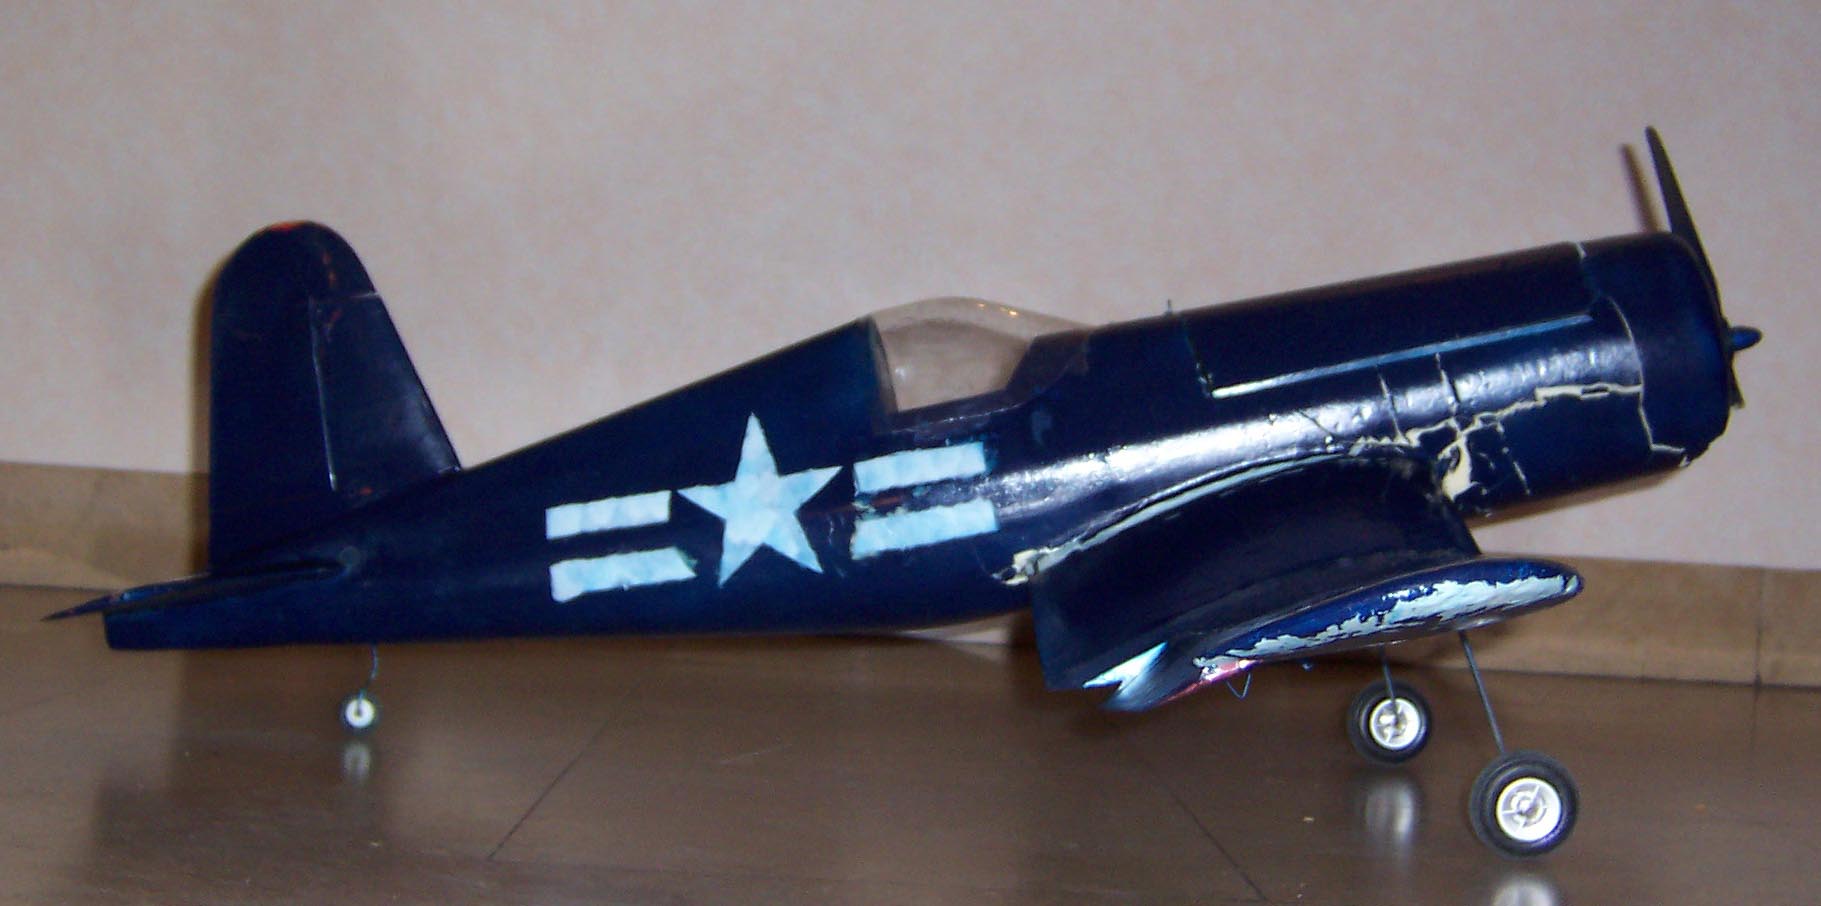 F4U-1 Corsair